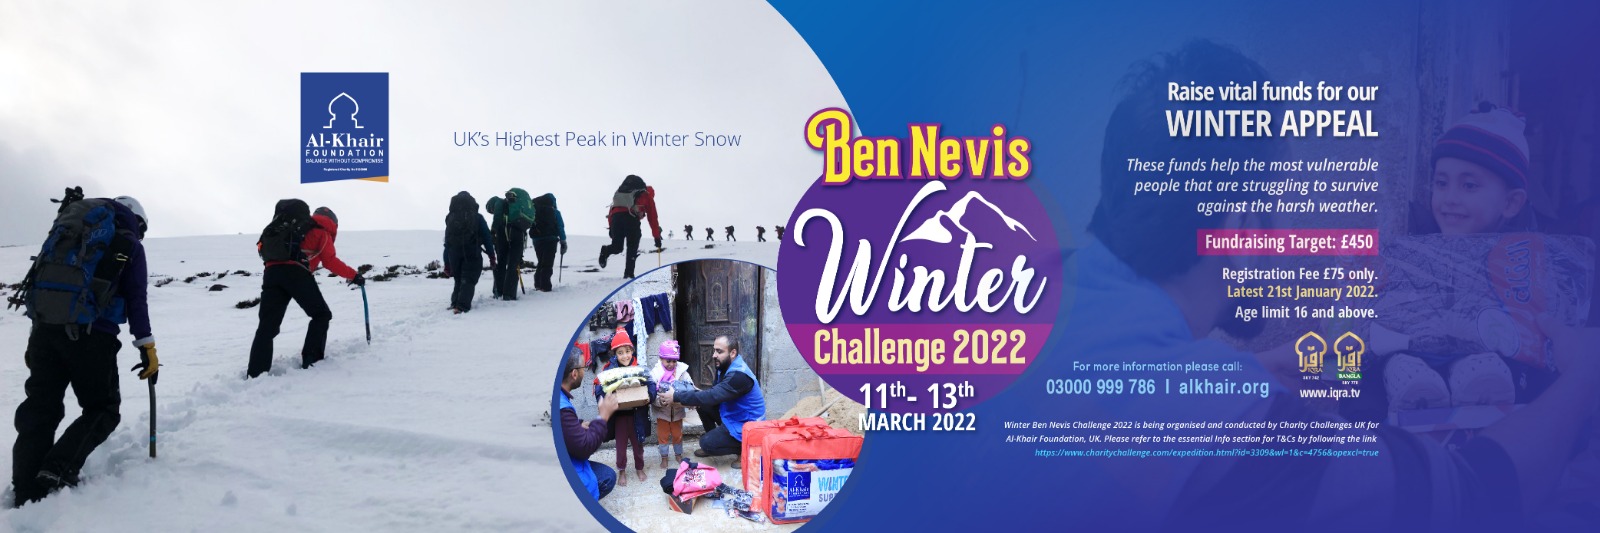 Ben Nevis Winter Challenge